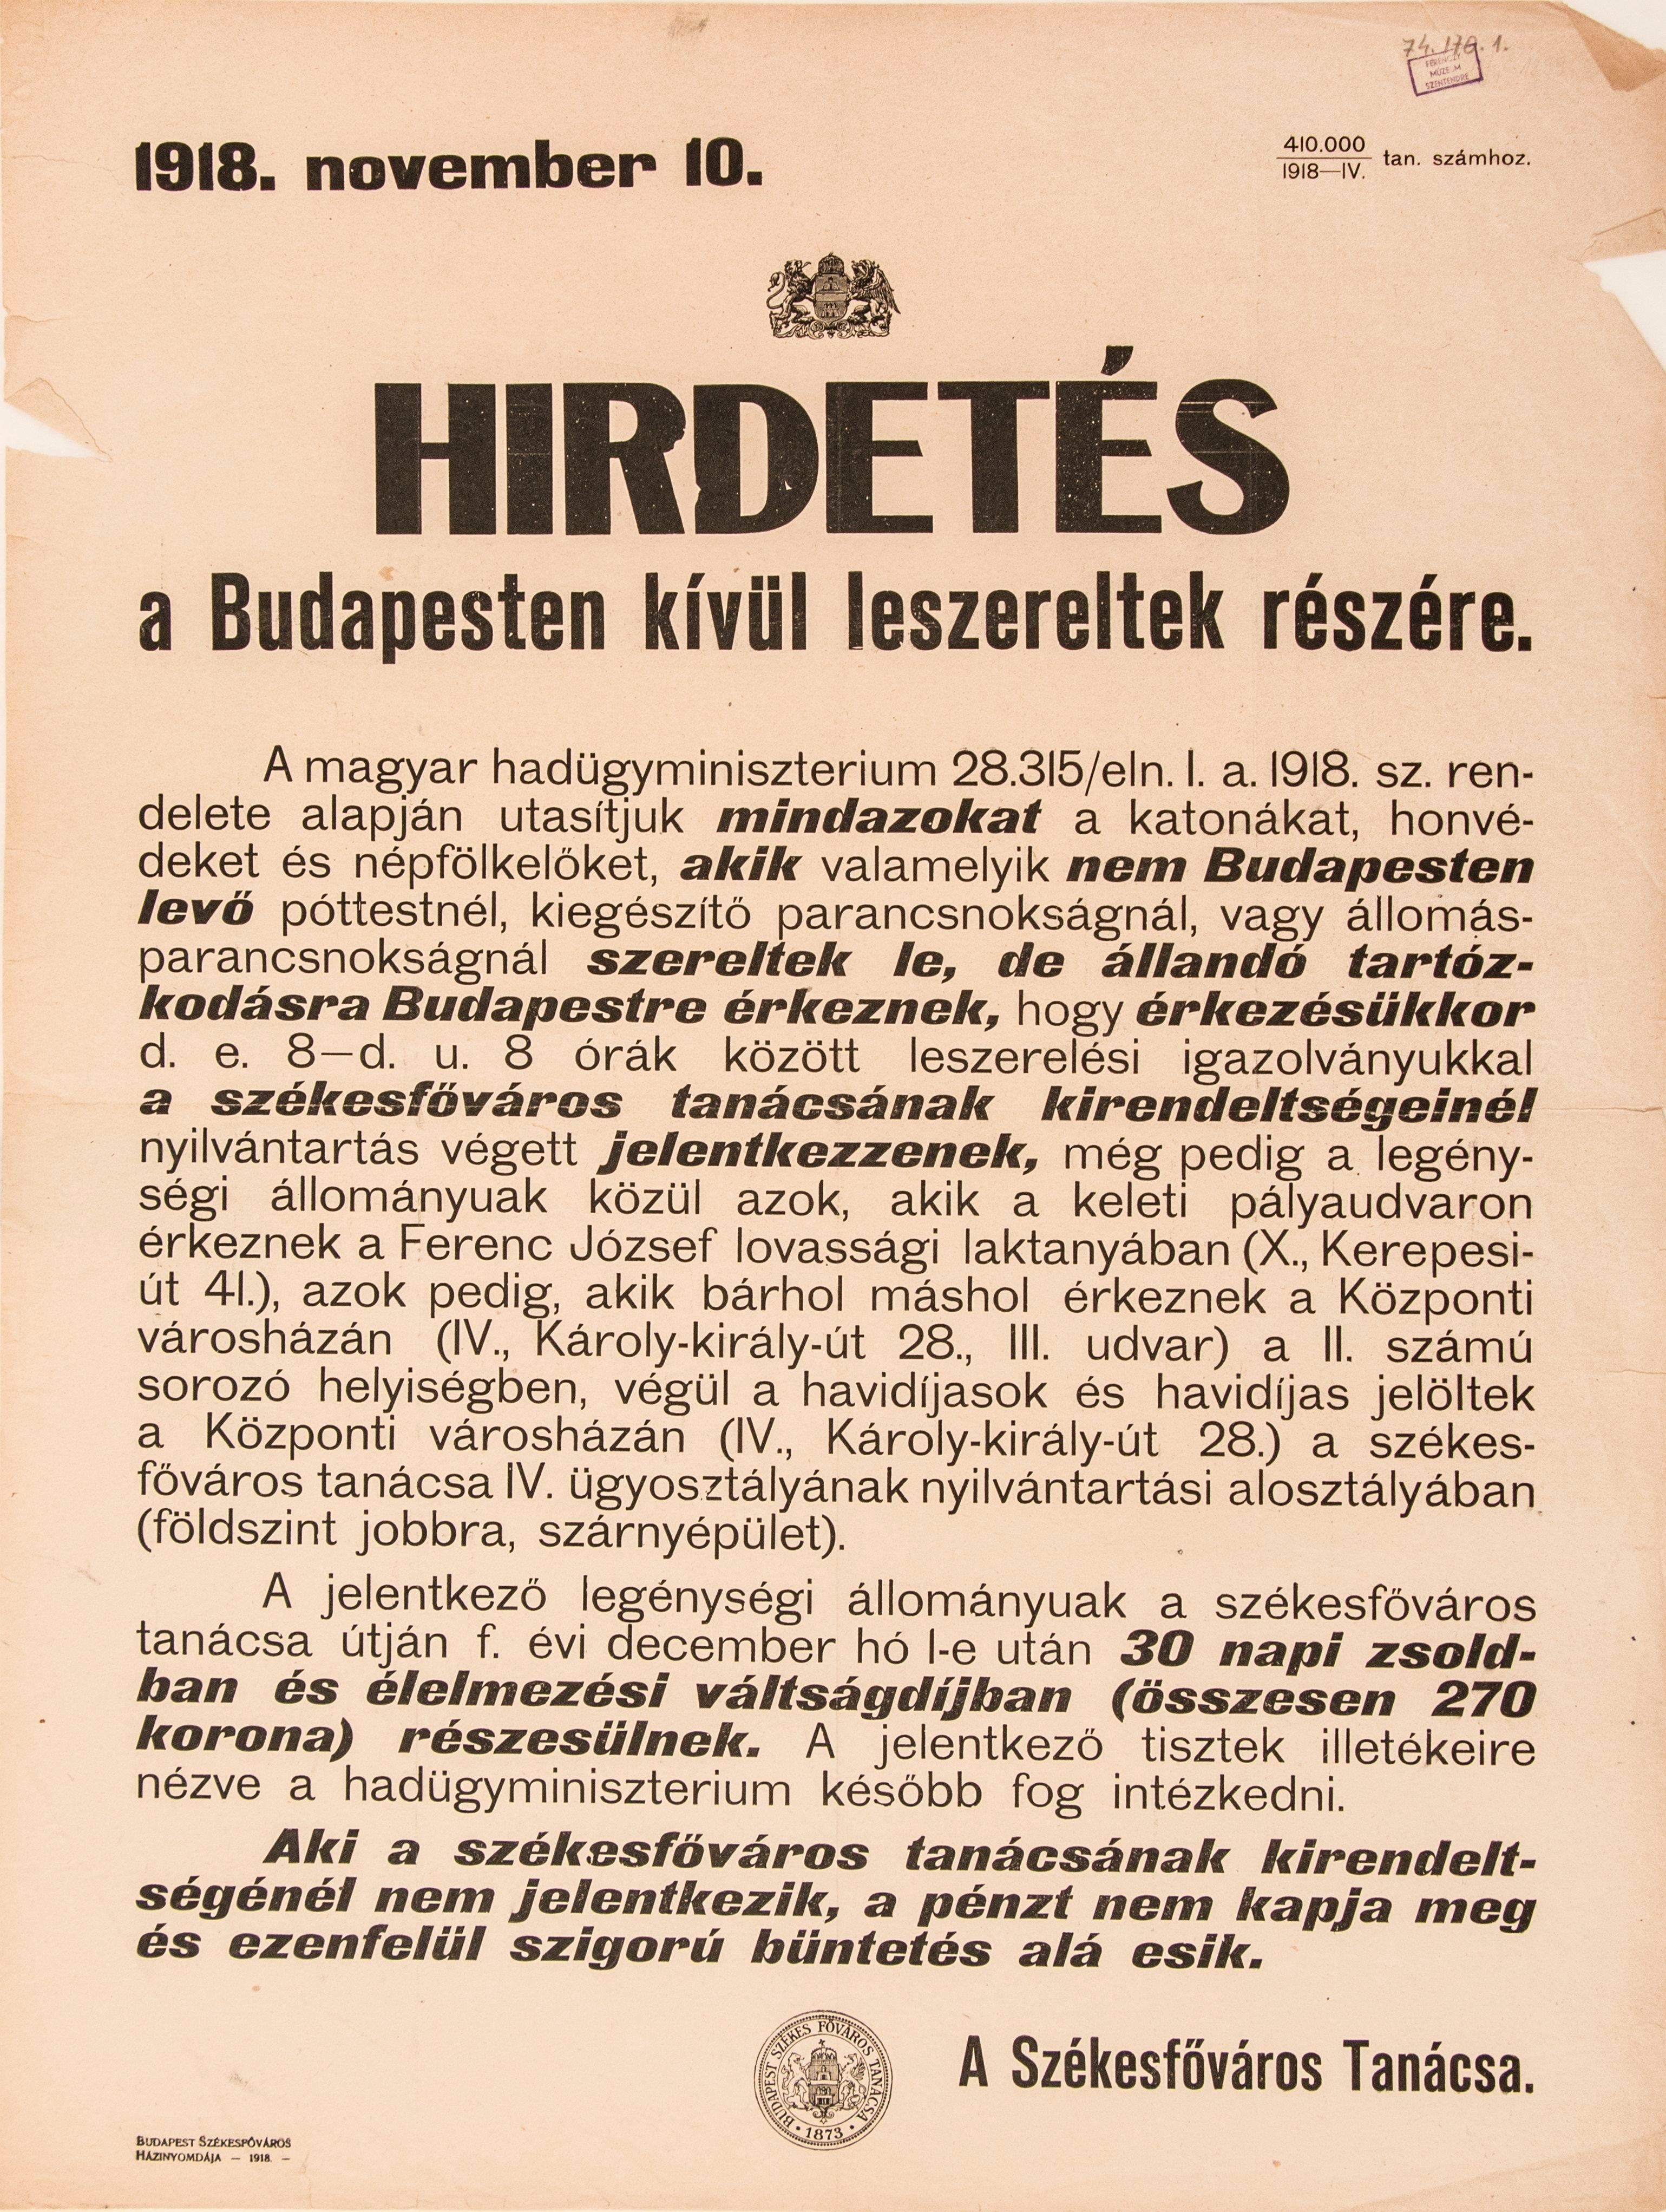 Hirdetés a Budapesten kívül leszereltek számára, 1918.11.10. (Ferenczy Múzeumi Centrum CC BY-NC-SA)